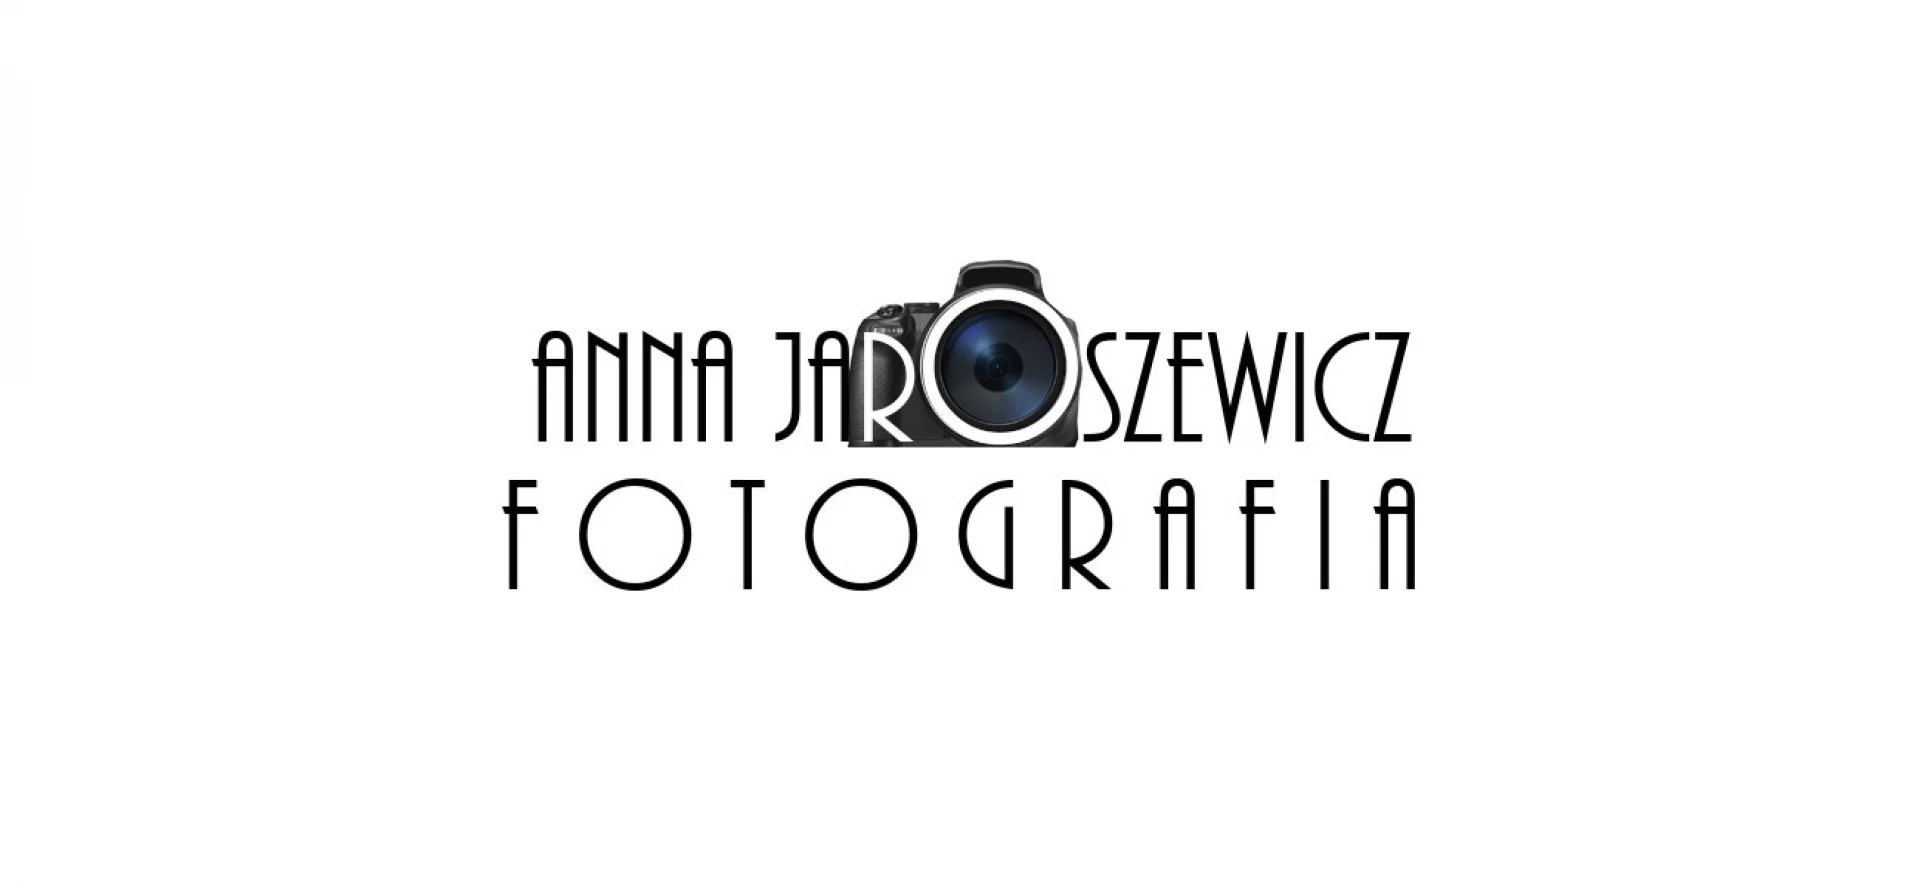 portfolio zdjecia znany fotograf anna-jaroszewicz-jaroszewiczfotografia